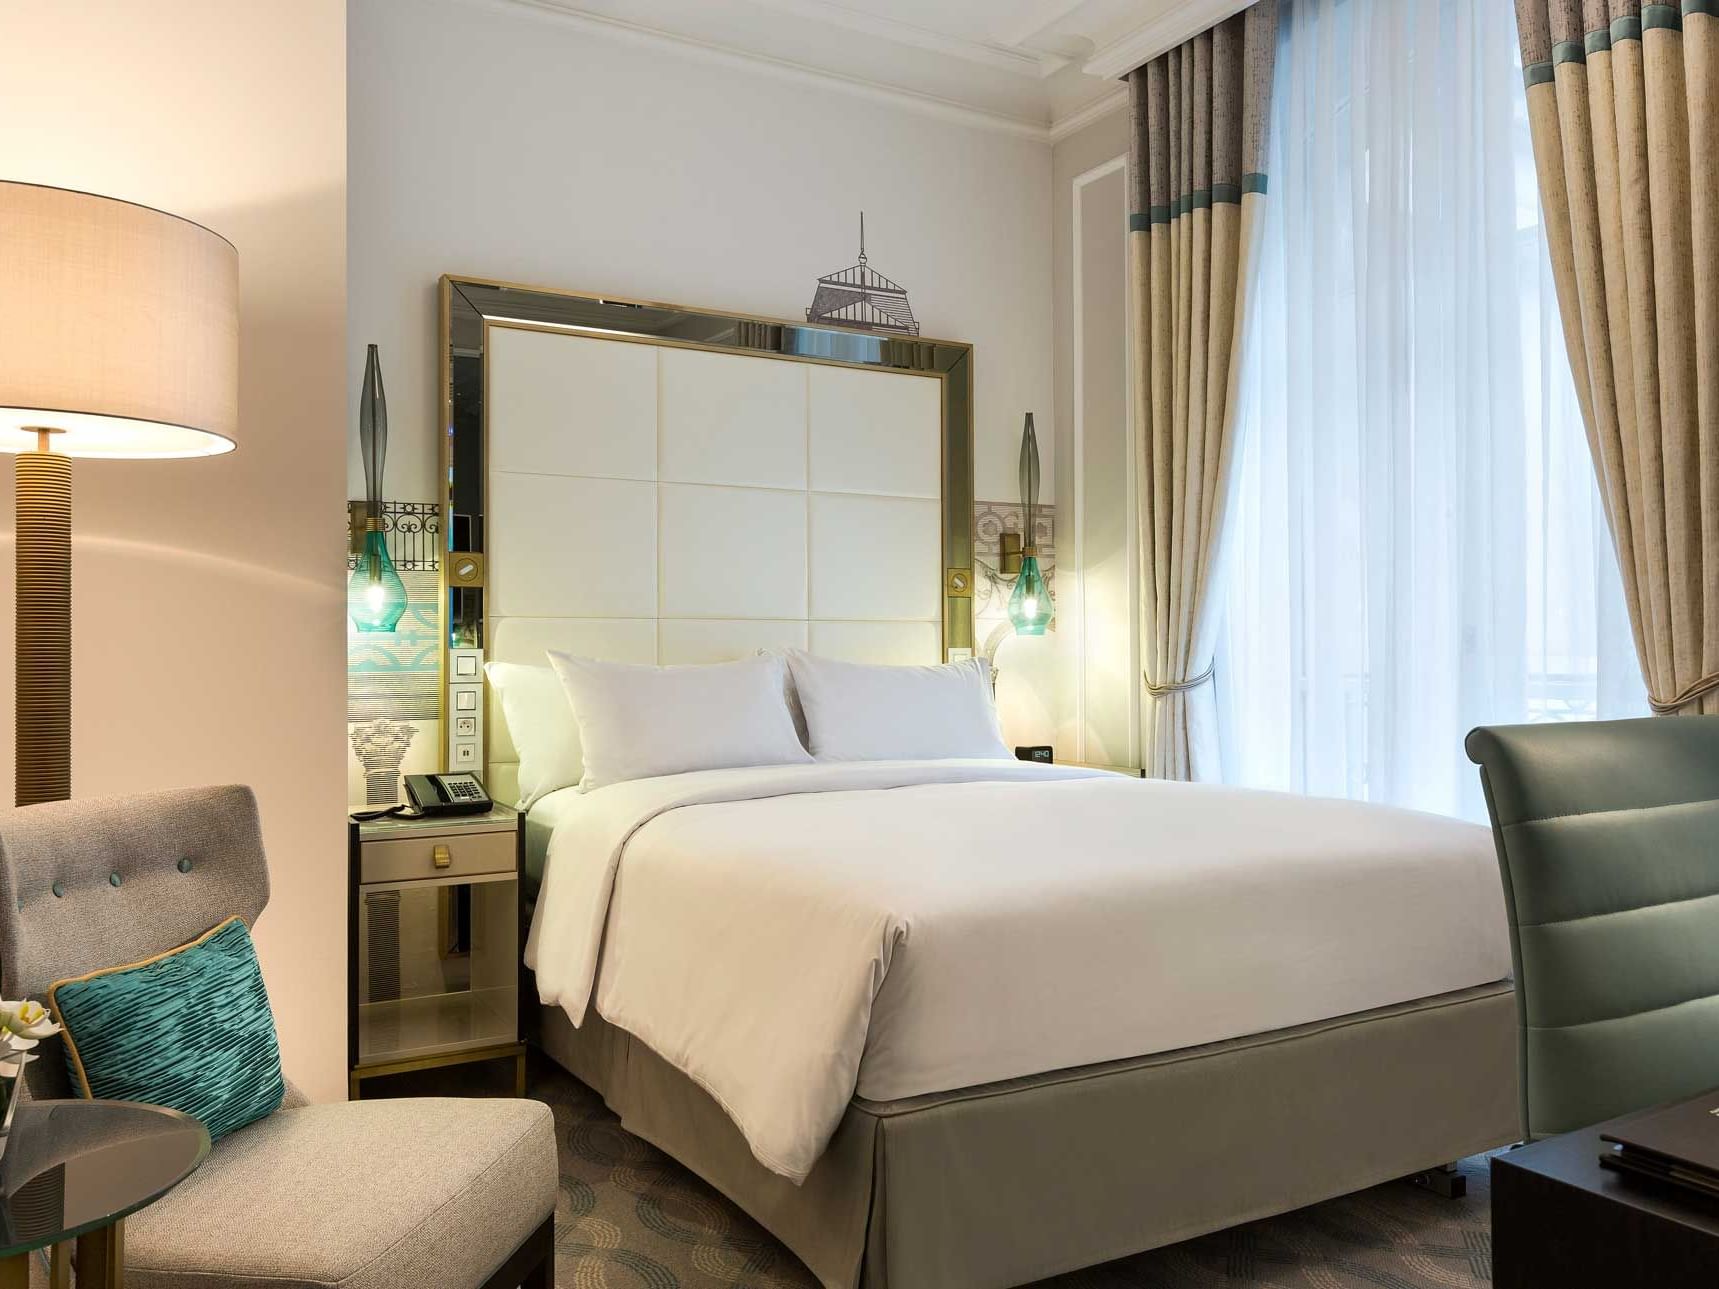 Queen Junior Suite bed & furniture at Hilton Paris Opera Hotel